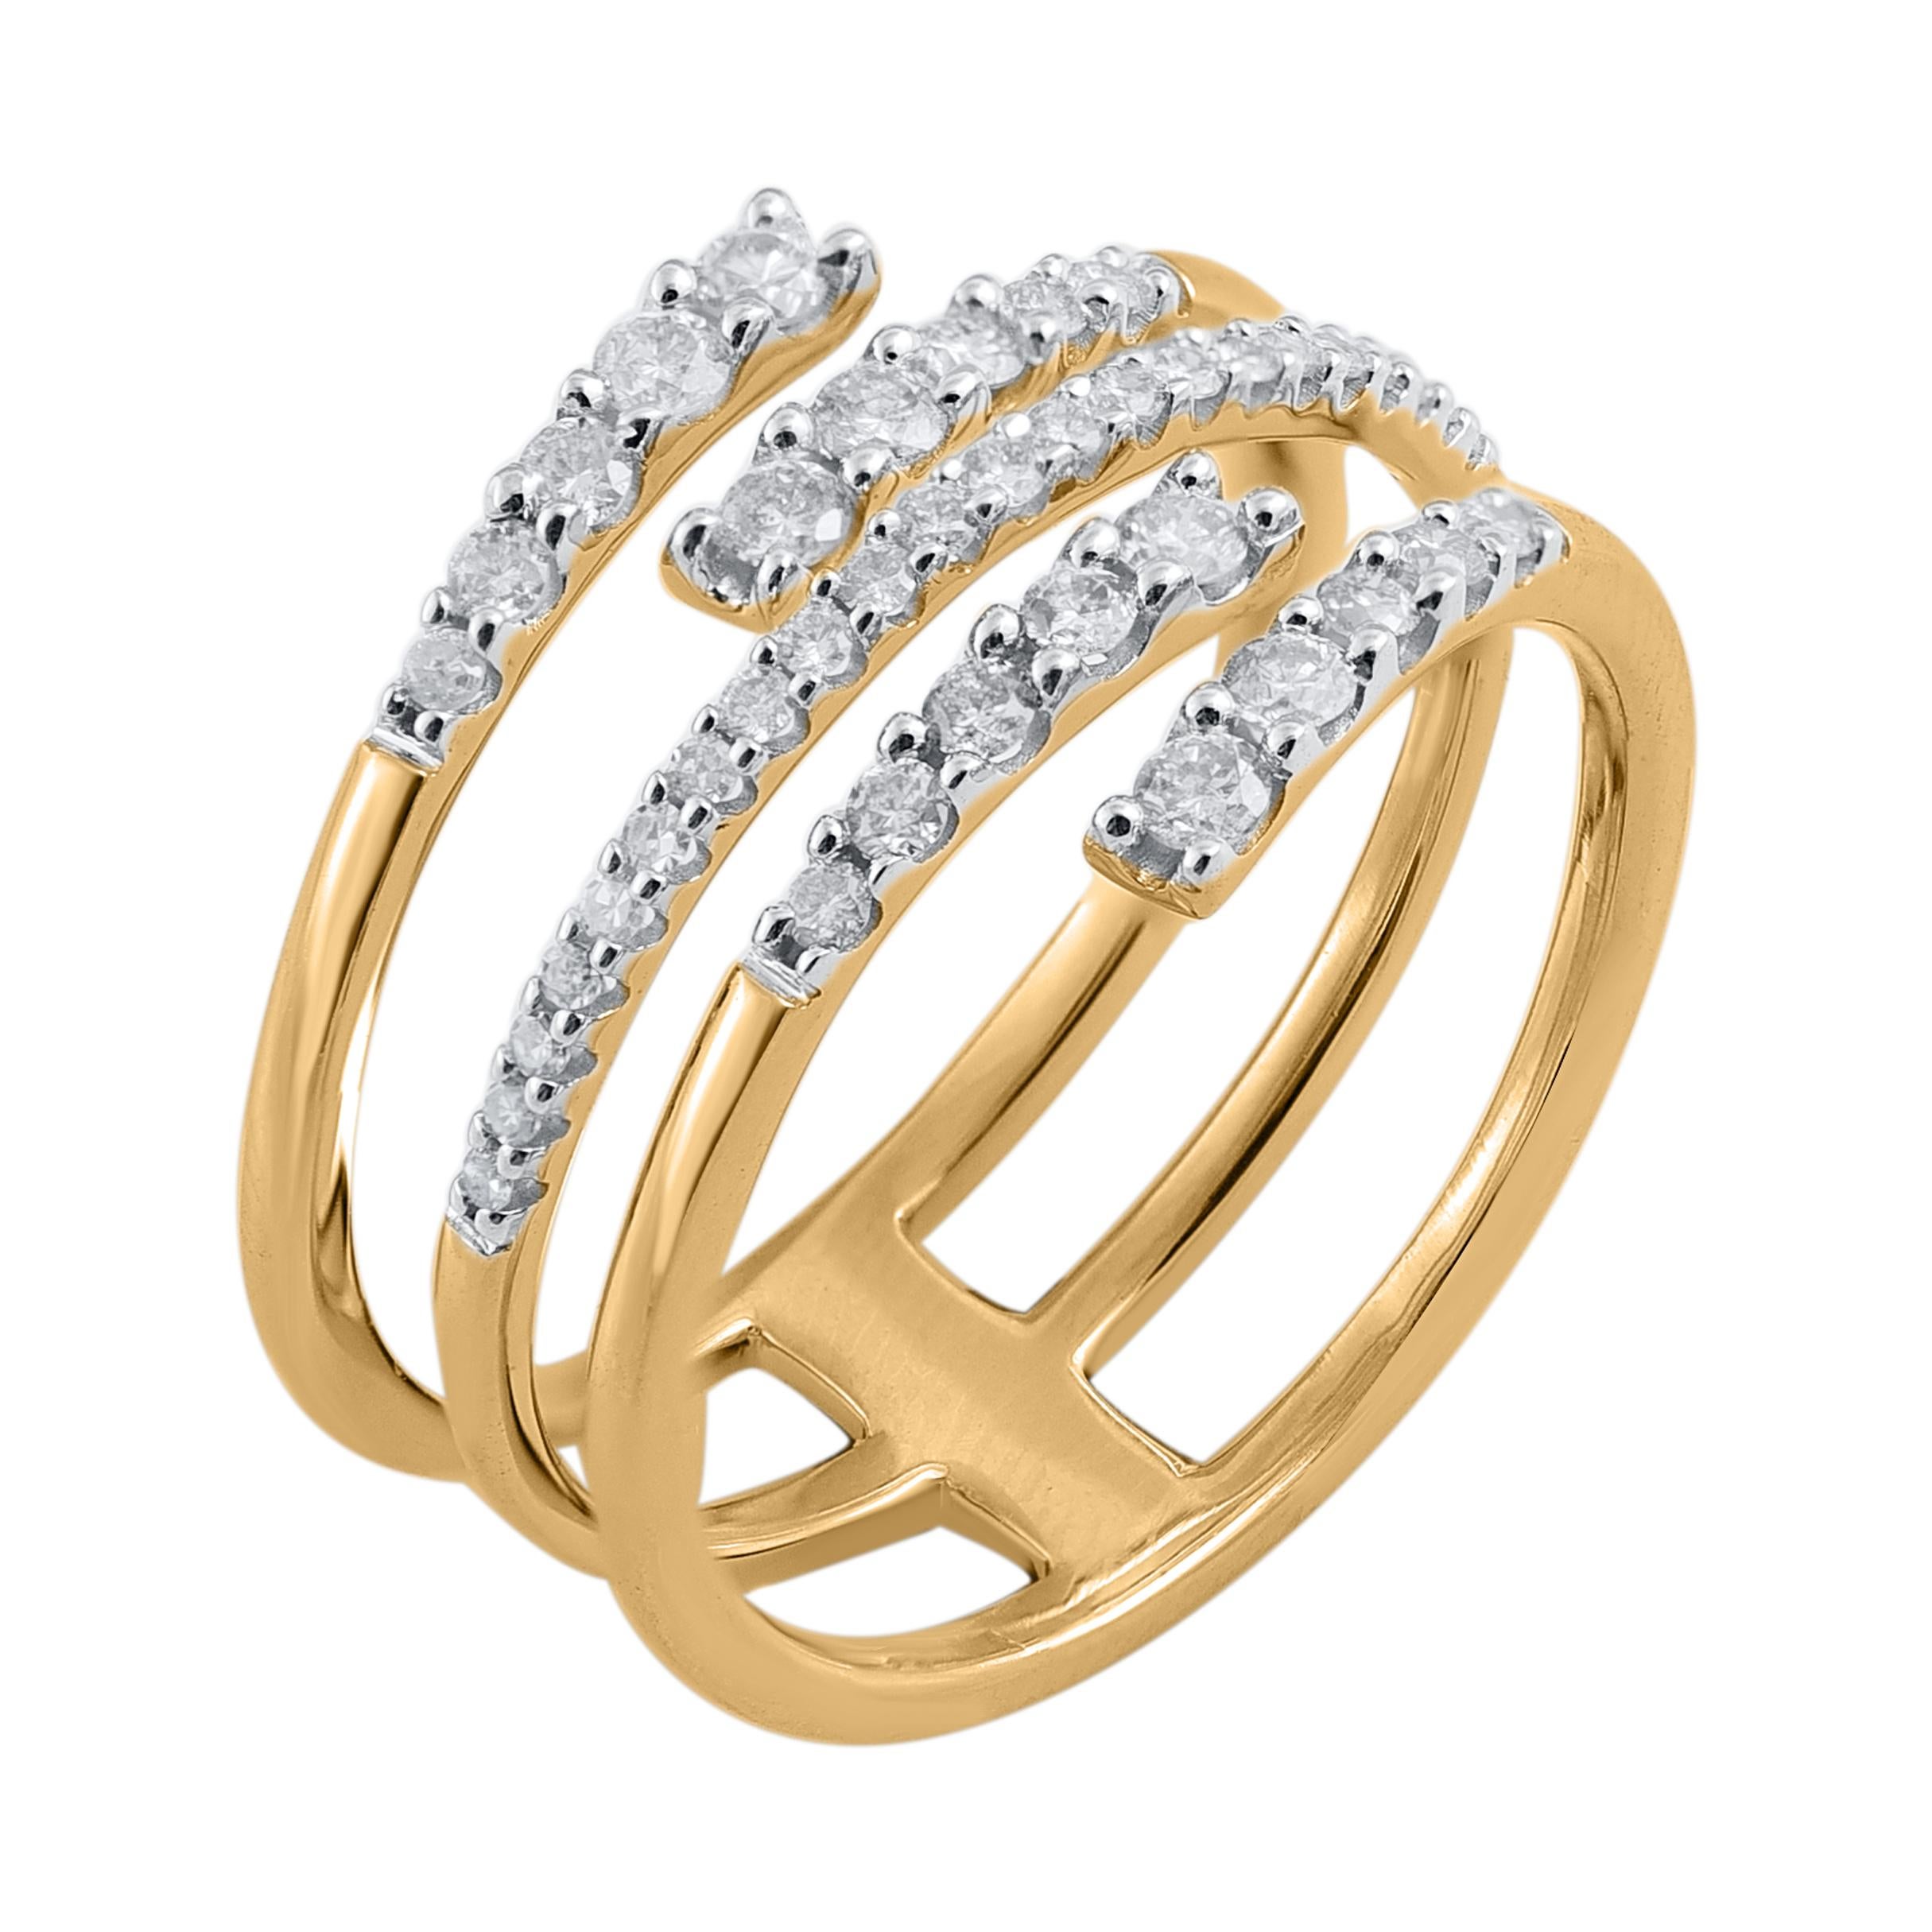 Bringen Sie Charme in Ihren Look mit diesem Diamantring. Dieser Ring ist wunderschön in 14 Karat Gelbgold gefertigt und mit 51 runden Diamanten im Brillantschliff und Einzelschliff in Zackenfassung besetzt. Das Gesamtgewicht der Diamanten beträgt